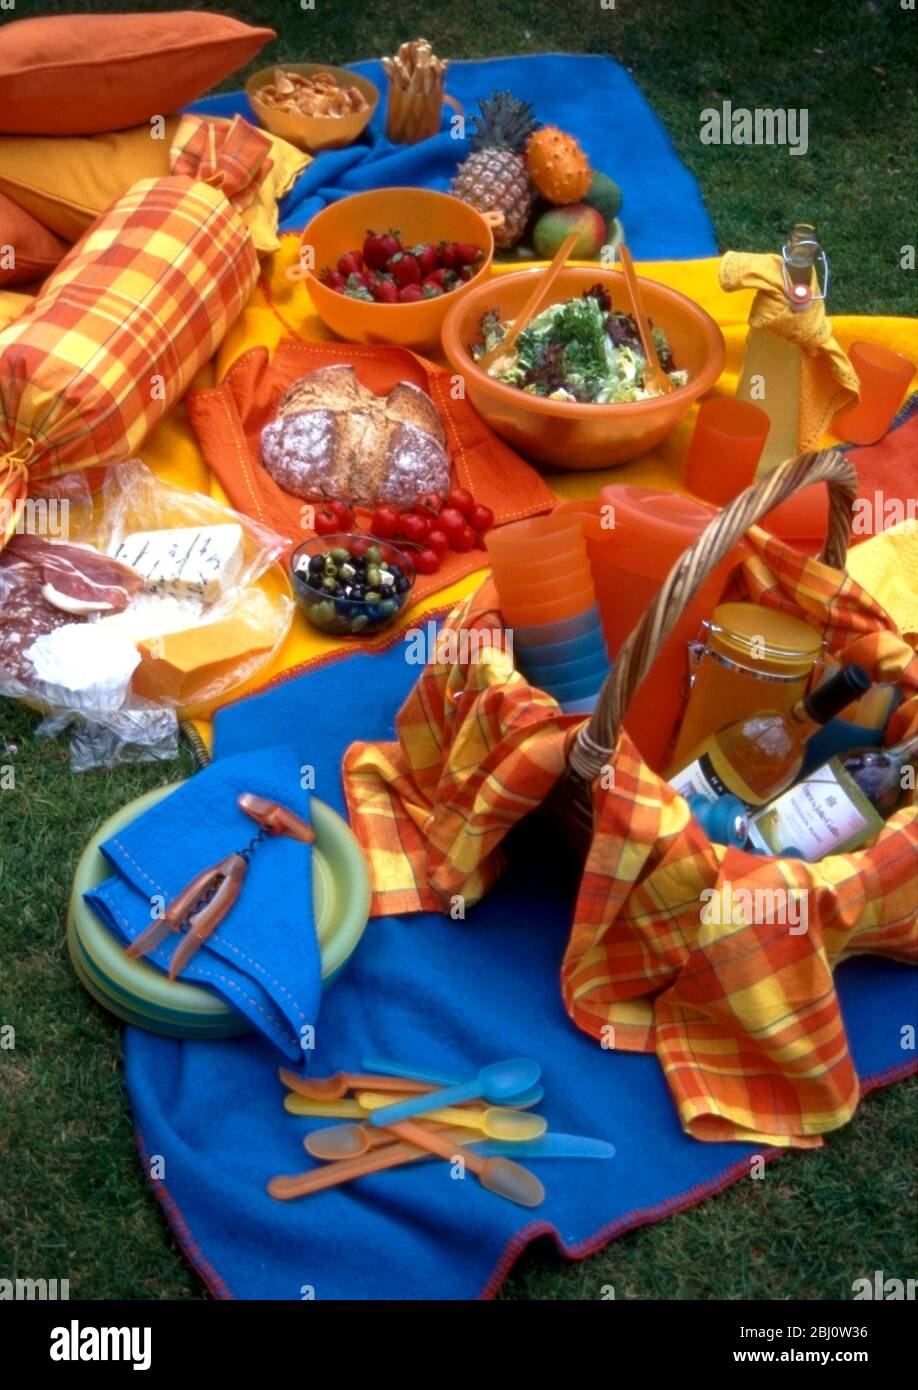 Bunte Picknick-Accessoires auf Gras angeordnet, mit Korb mit Weinflaschen, Käse und Salate - Stockfoto